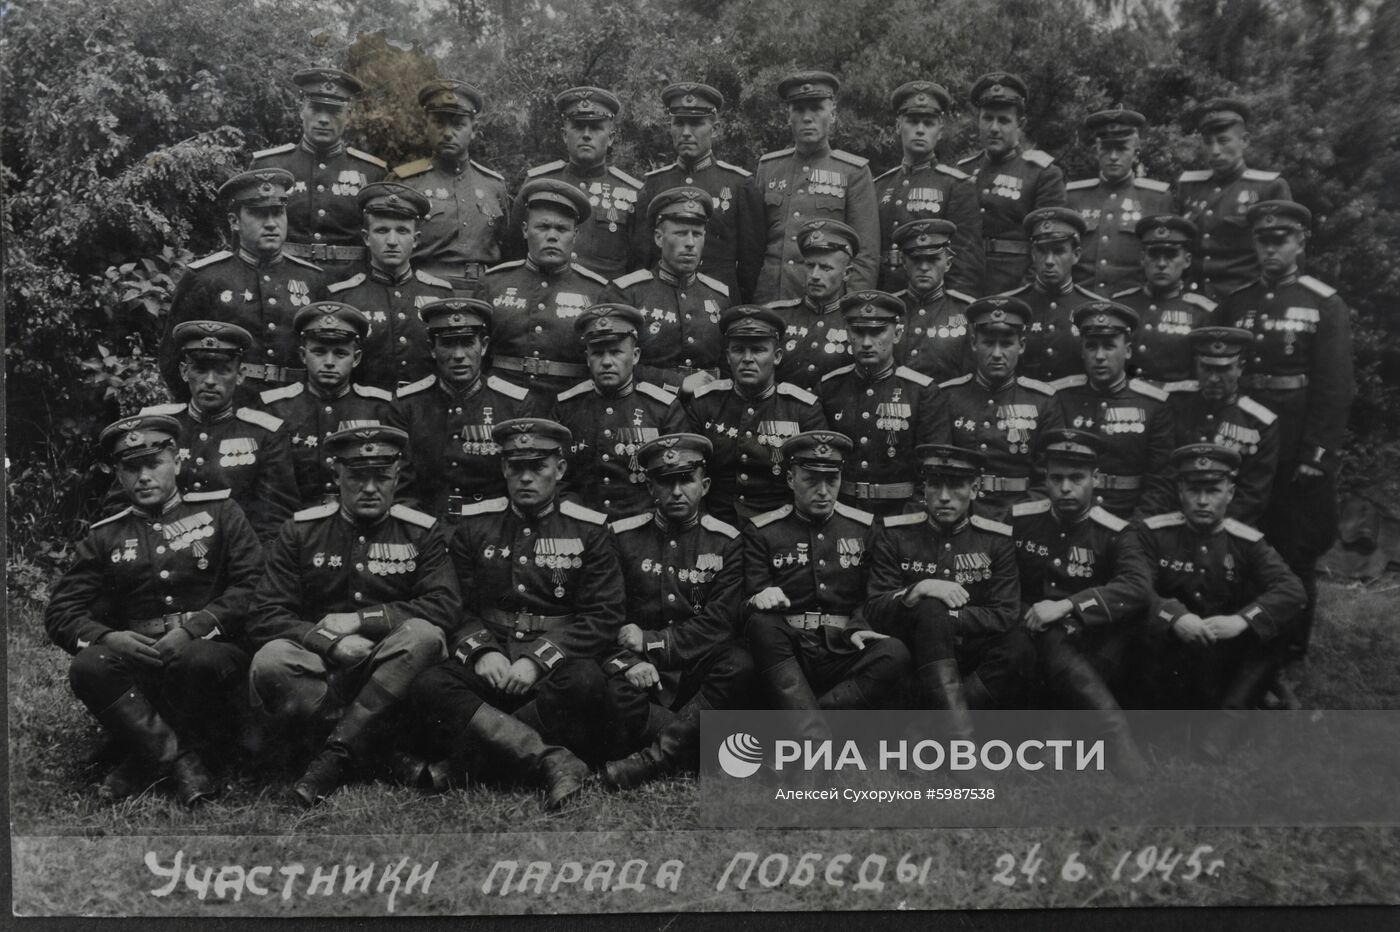 Ветеран Великой Отечественной войны А. Н. Боднар